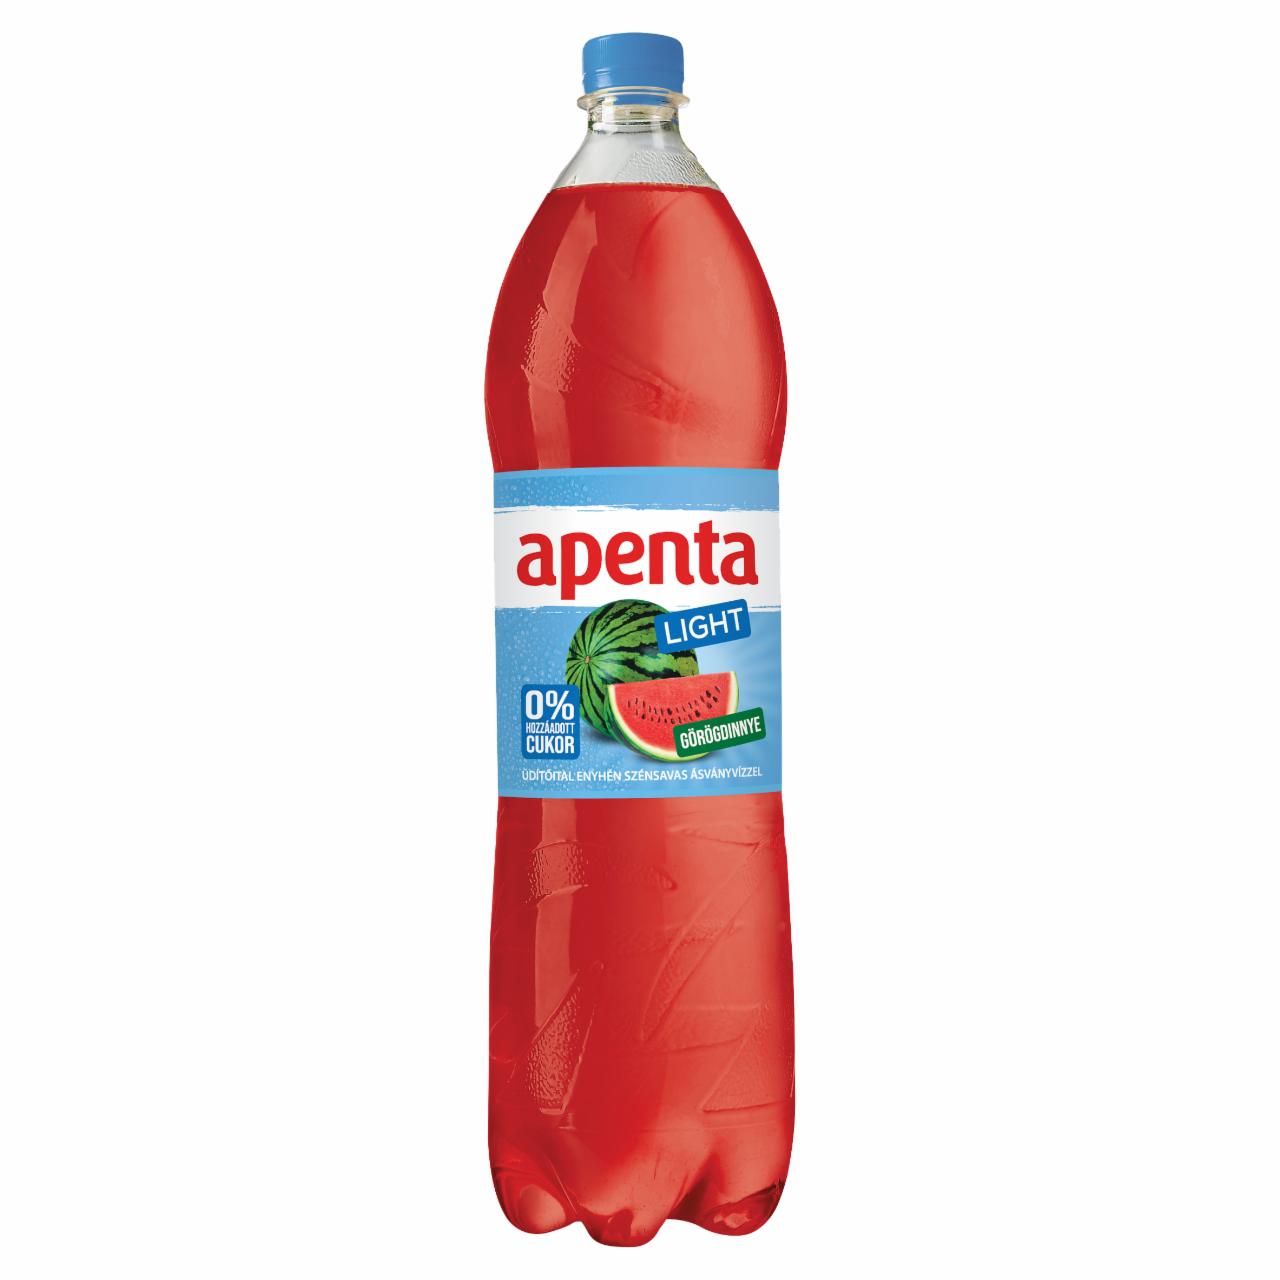 Képek - Apenta Light görögdinnye ízű enyhén szénsavas üdítőital édesítőszerekkel 1,5 l